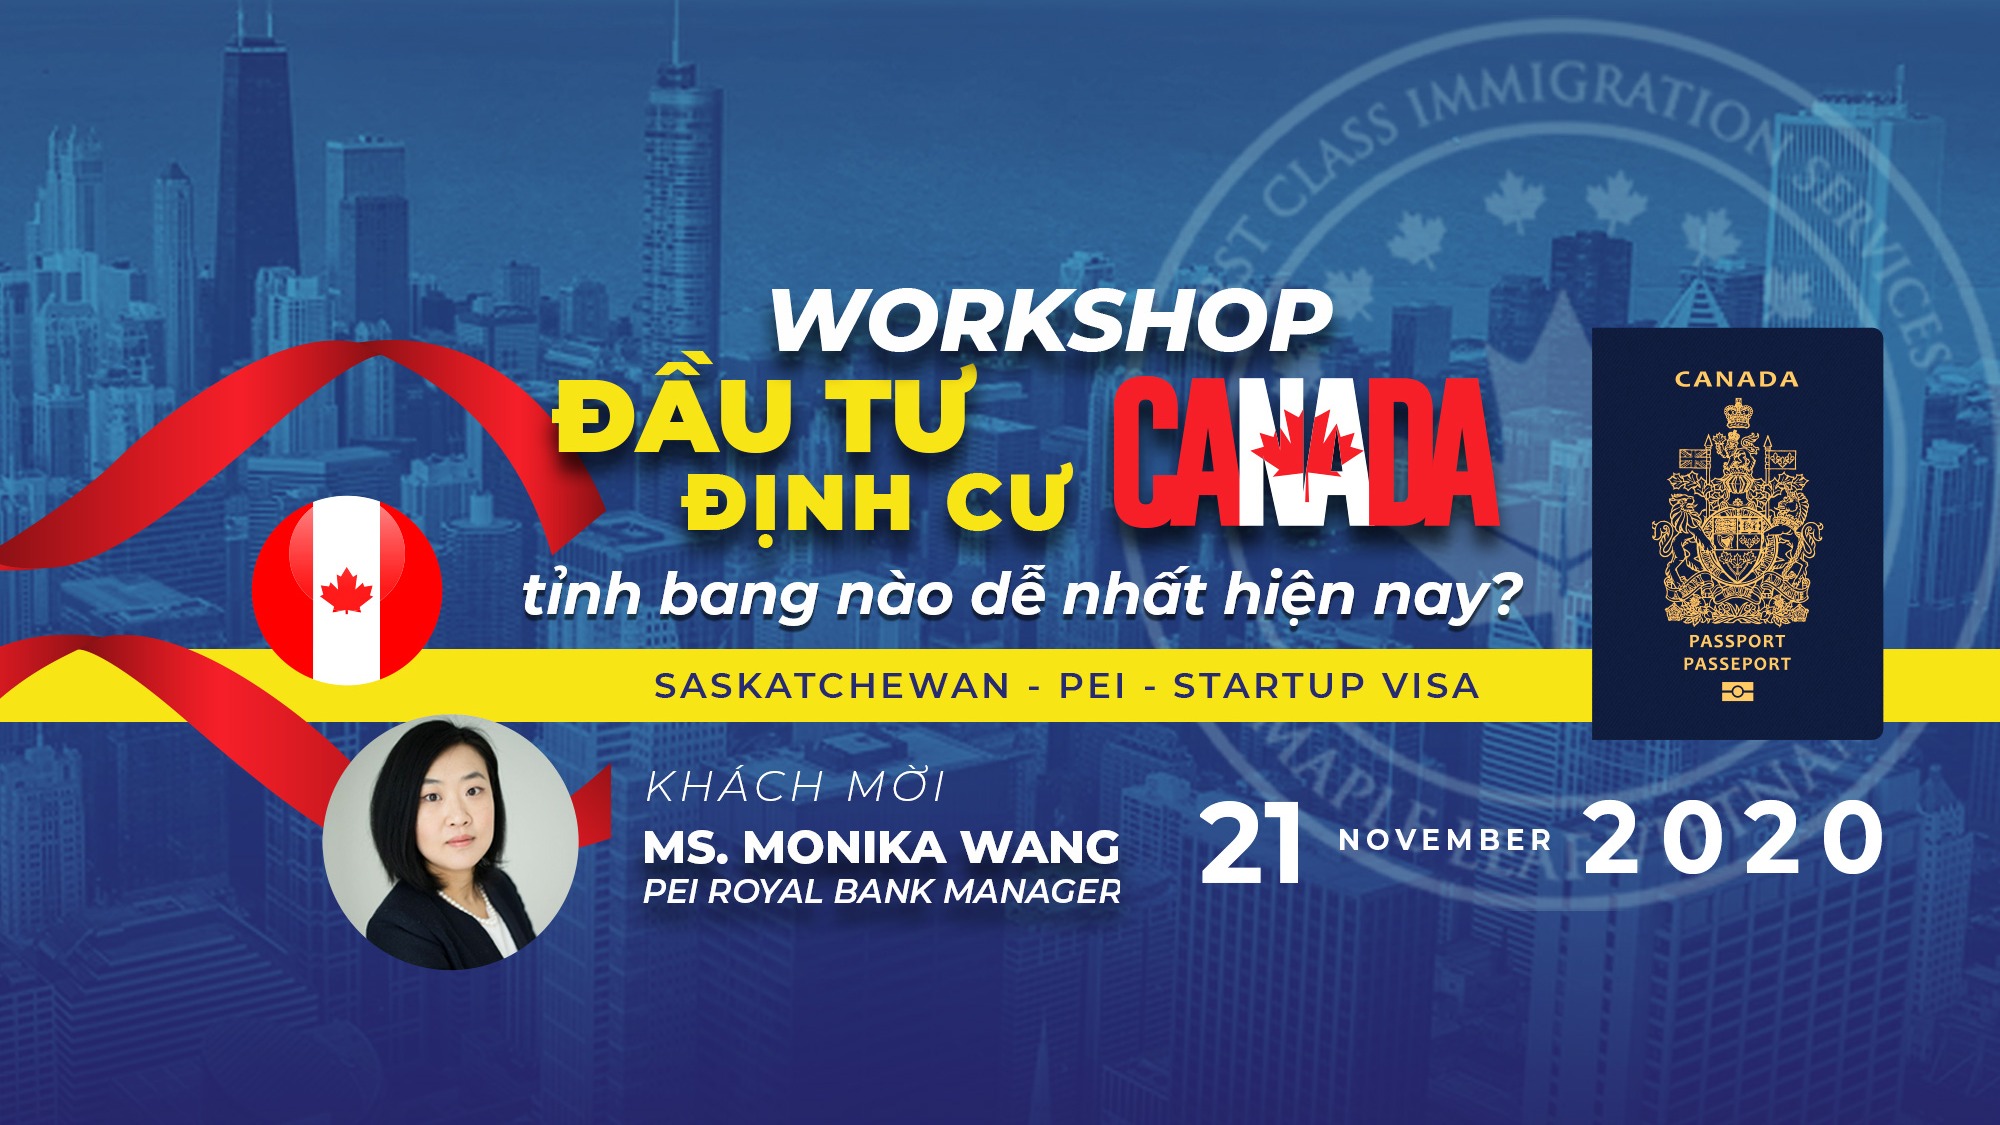 workshop-canada-2020-dinh-cu-canada-o-tinh-bang-nao-la-de-nhat-hien-nay